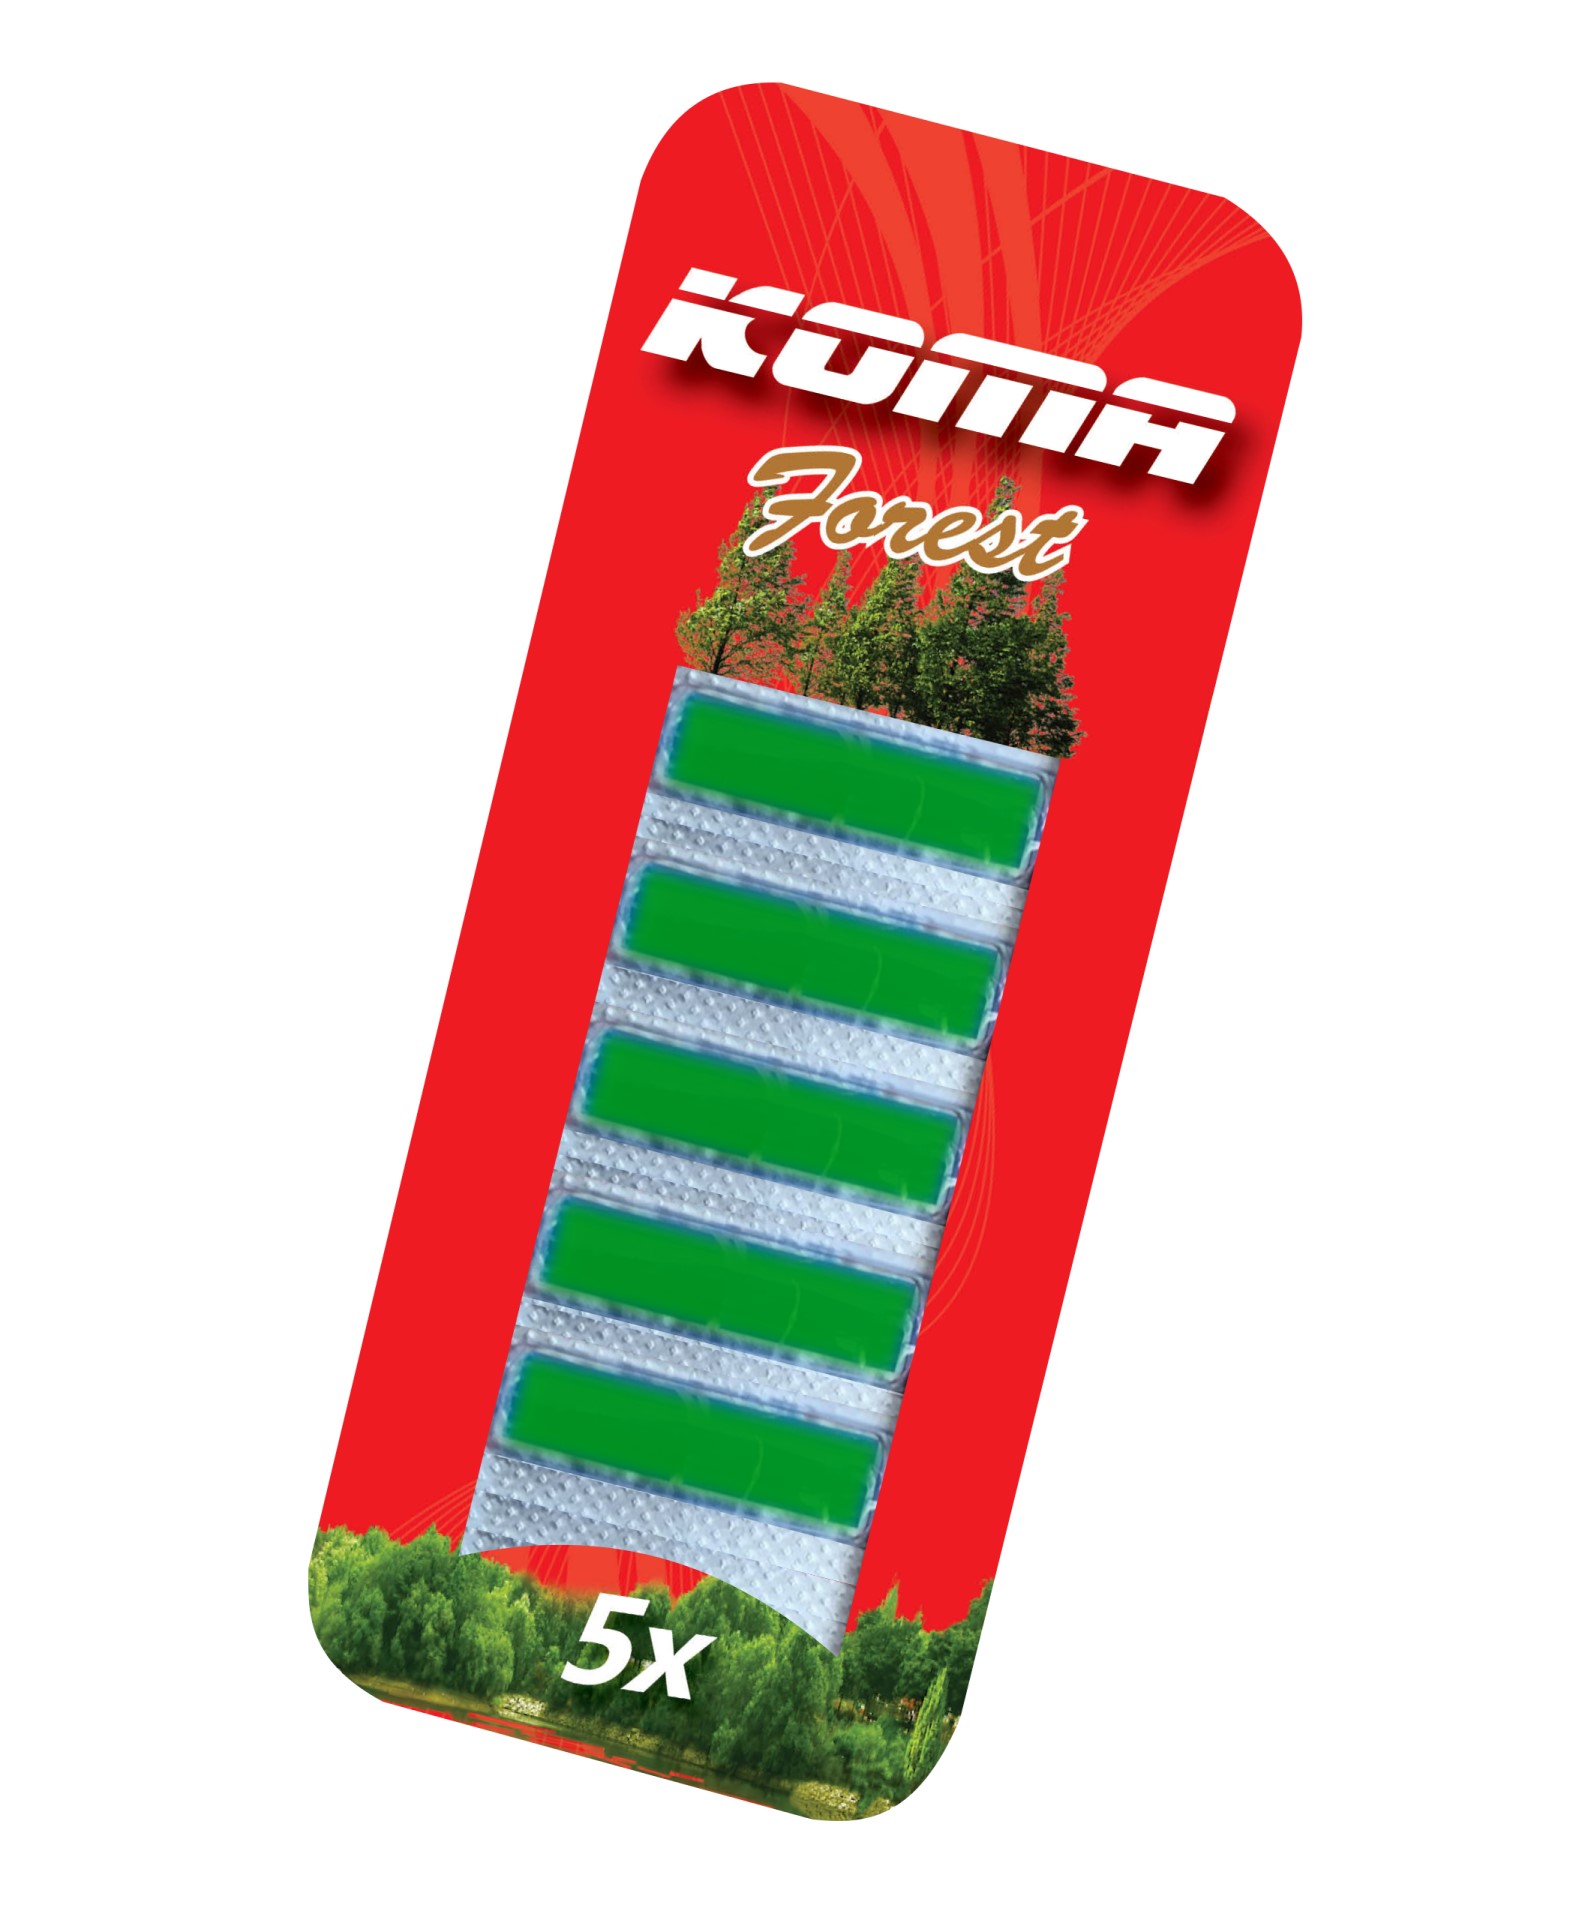 KOMA OSV8 - Porszívóhoz illat Erdő (erdő illat), 5db csomagban